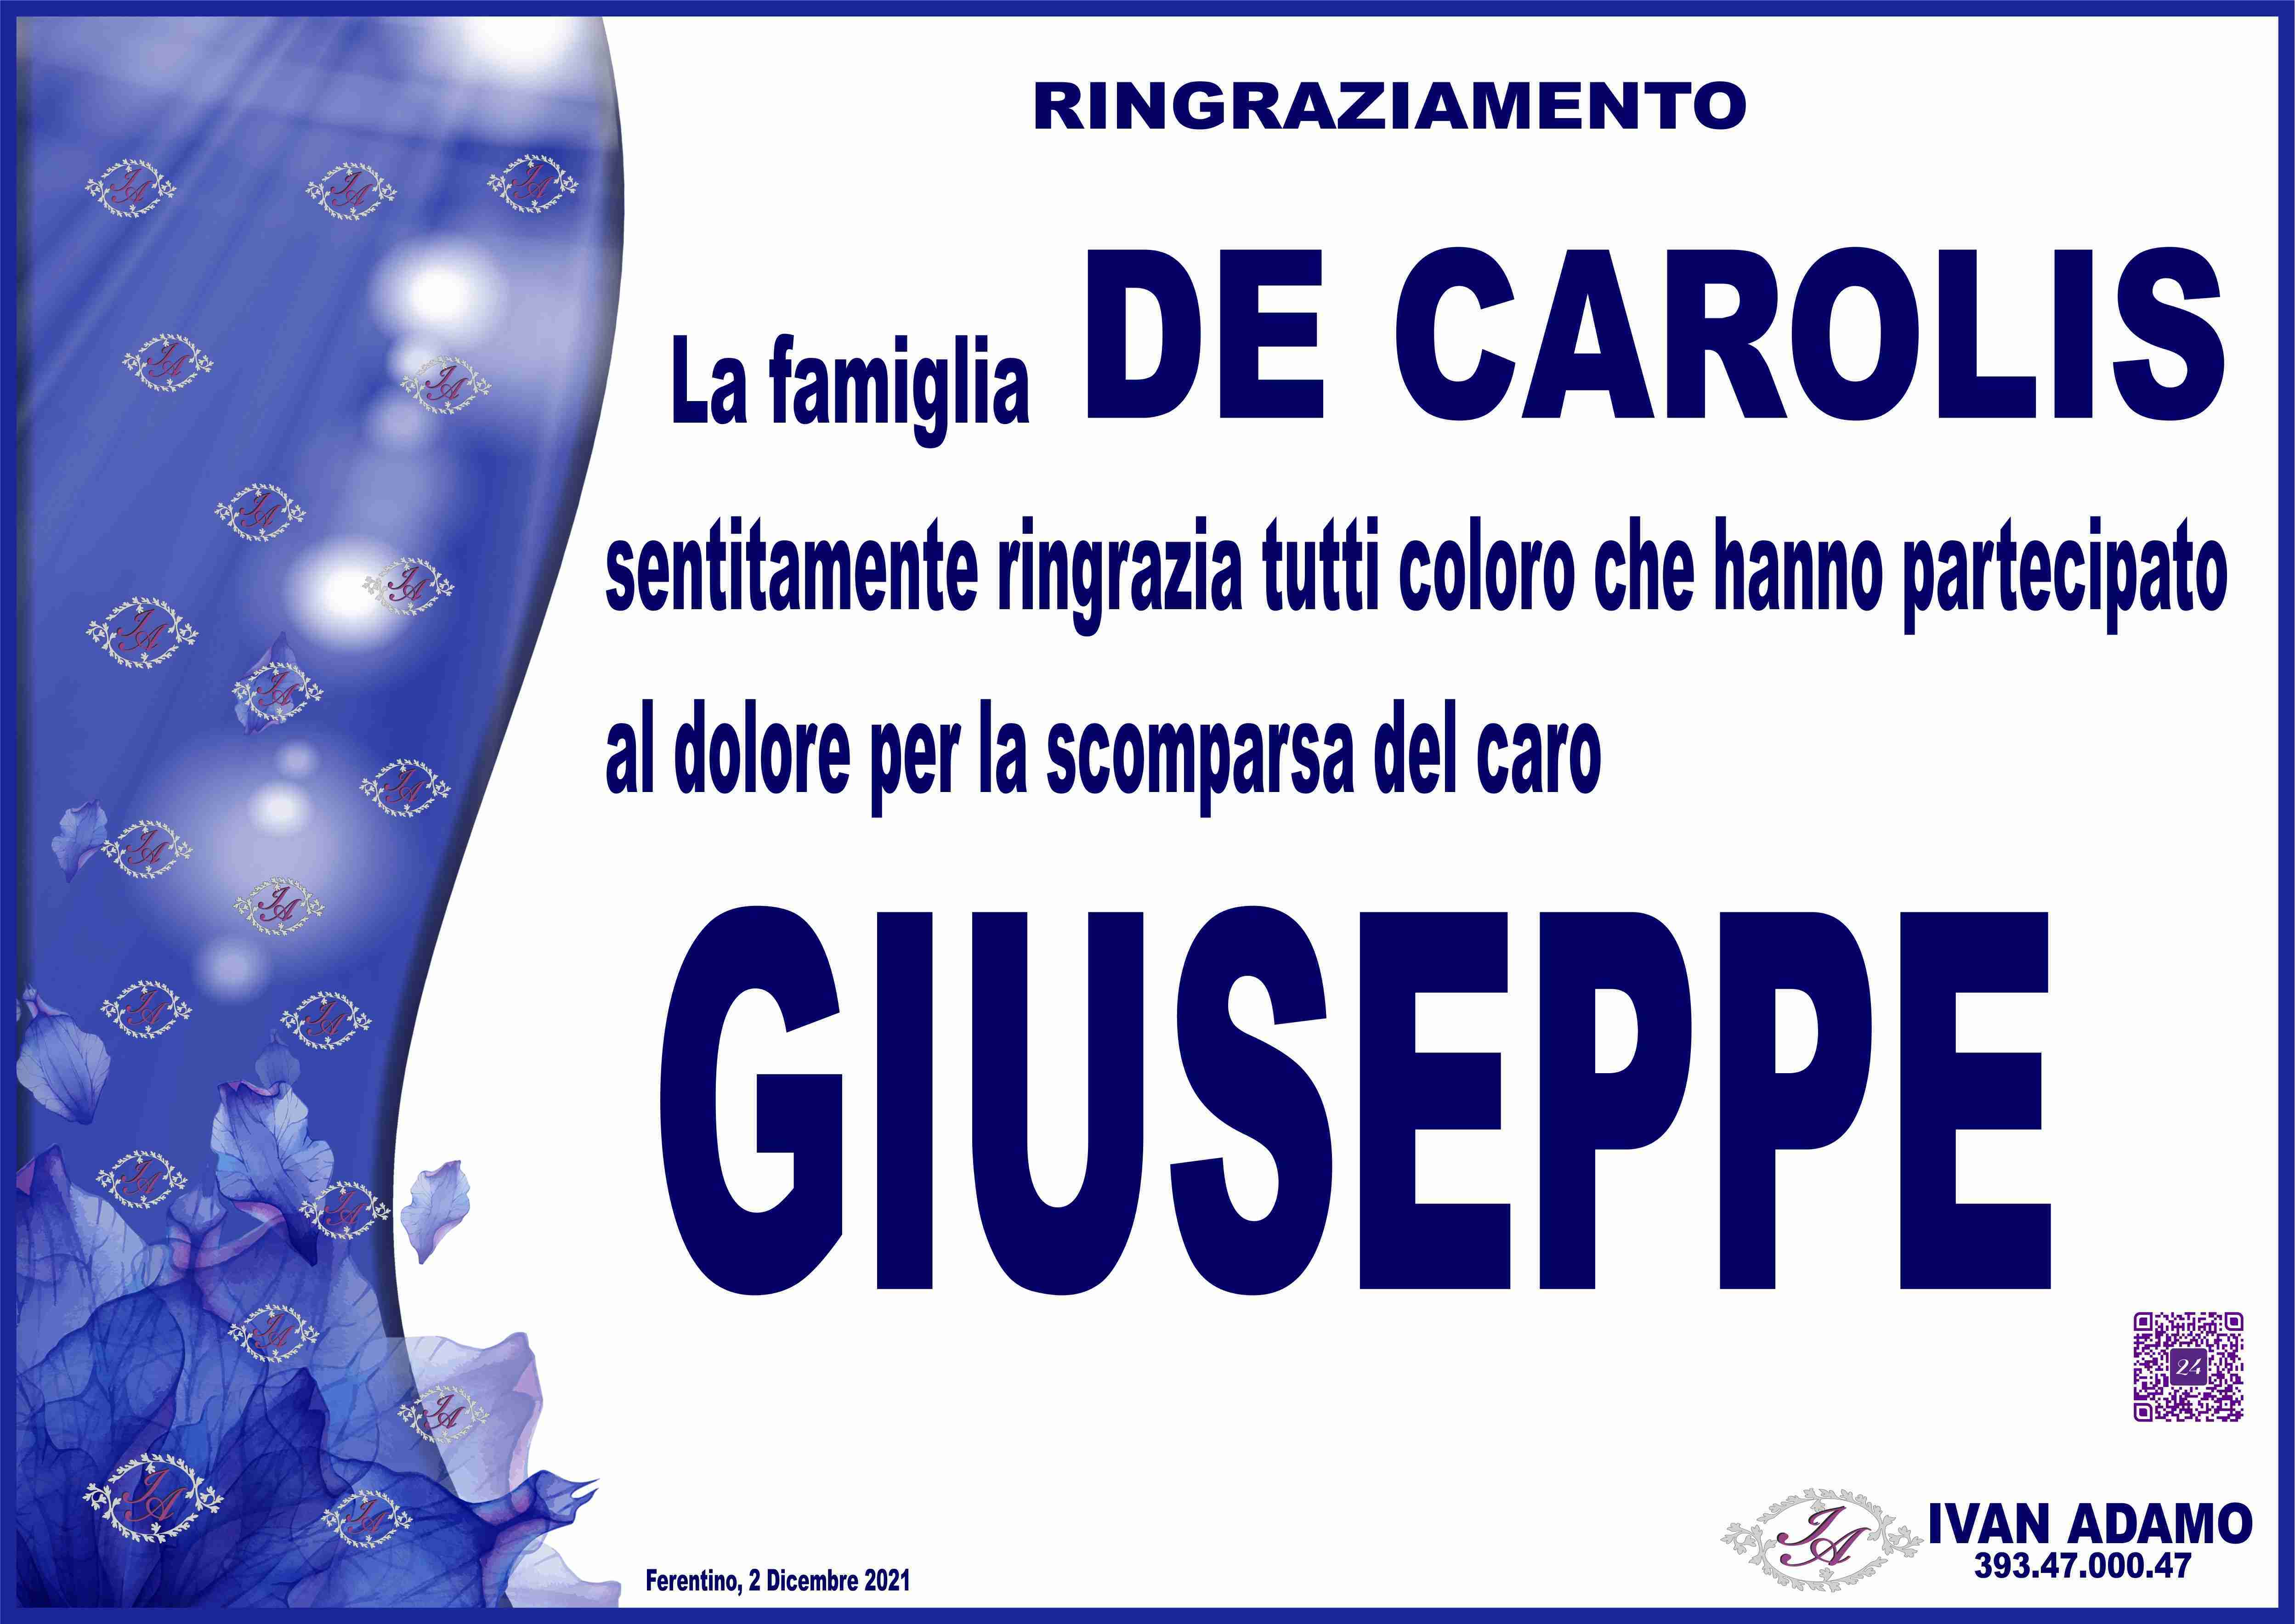 Giuseppe De Carolis